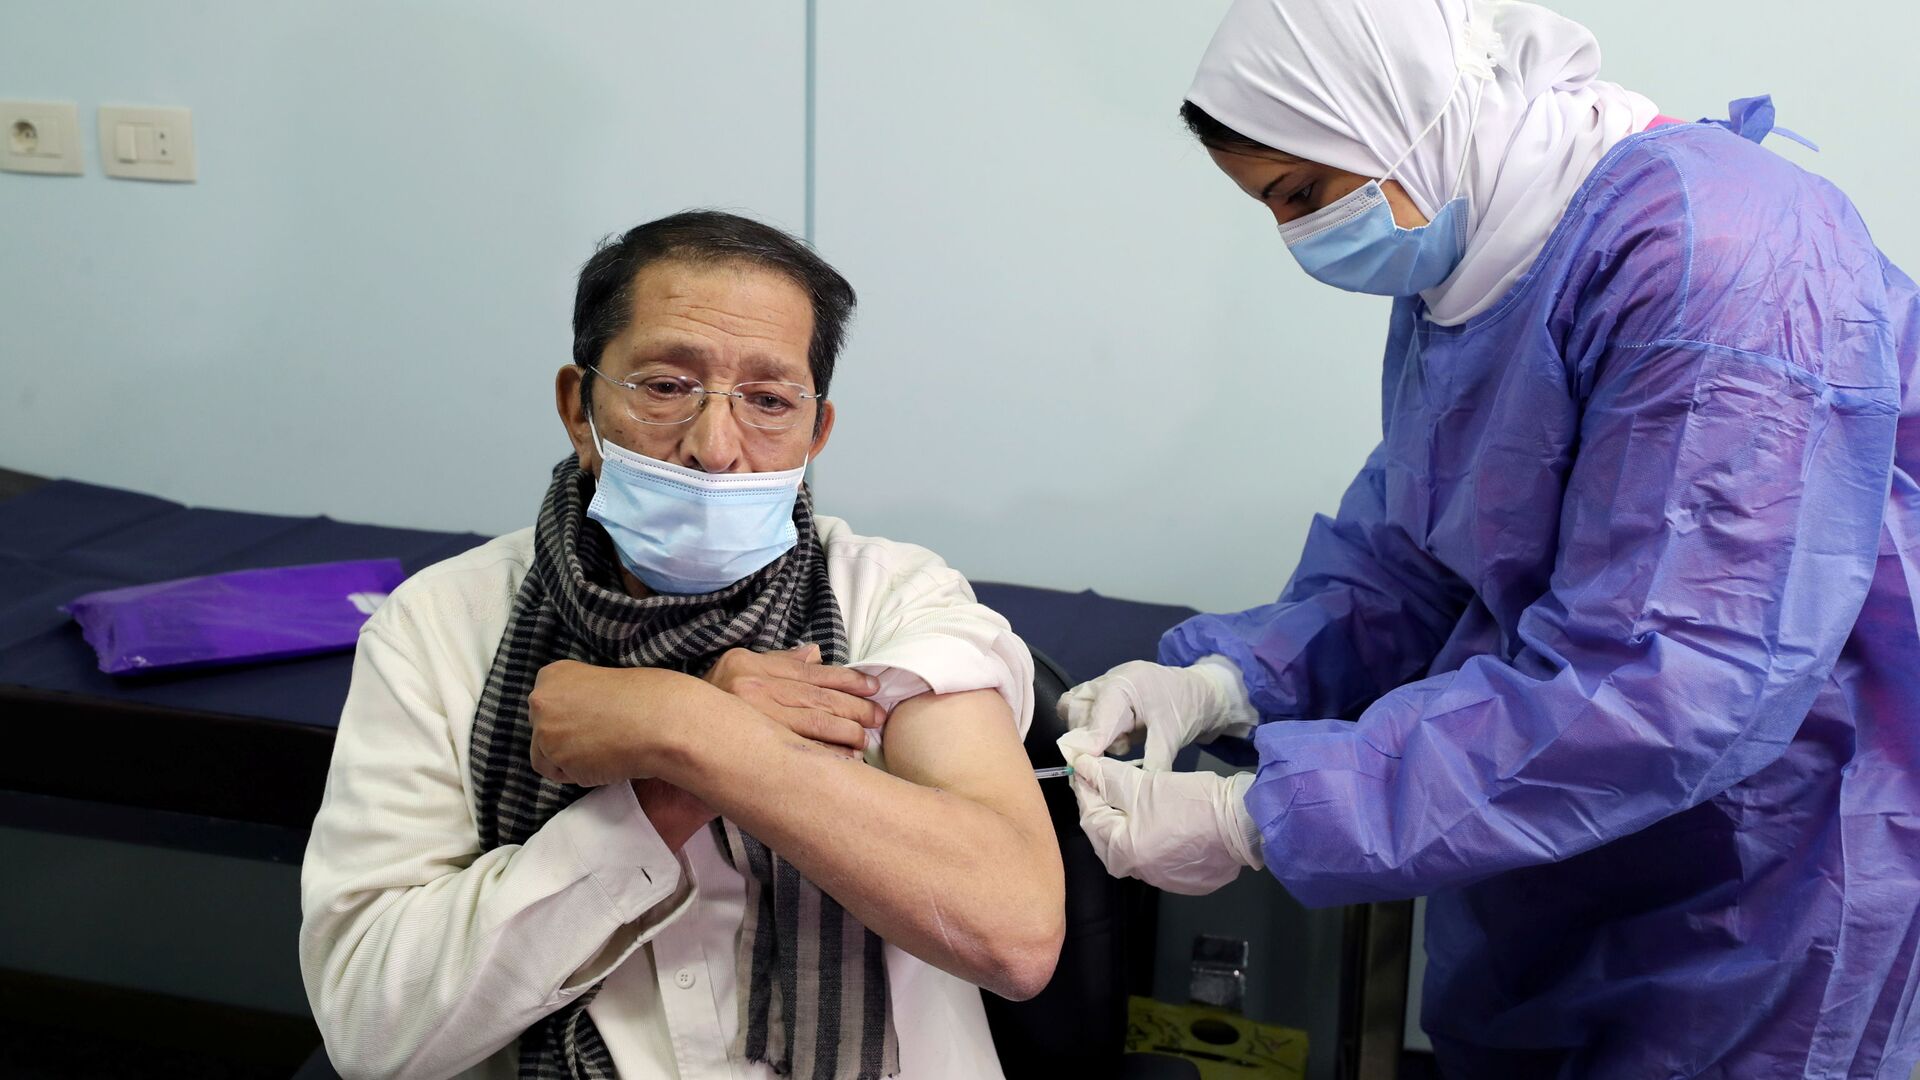 بدء تطعيم واسع النطاق في مصر ضد فيروس كورونا (كوفيد-19)، القاهرة، 4 مارس 2021 - سبوتنيك عربي, 1920, 23.12.2021